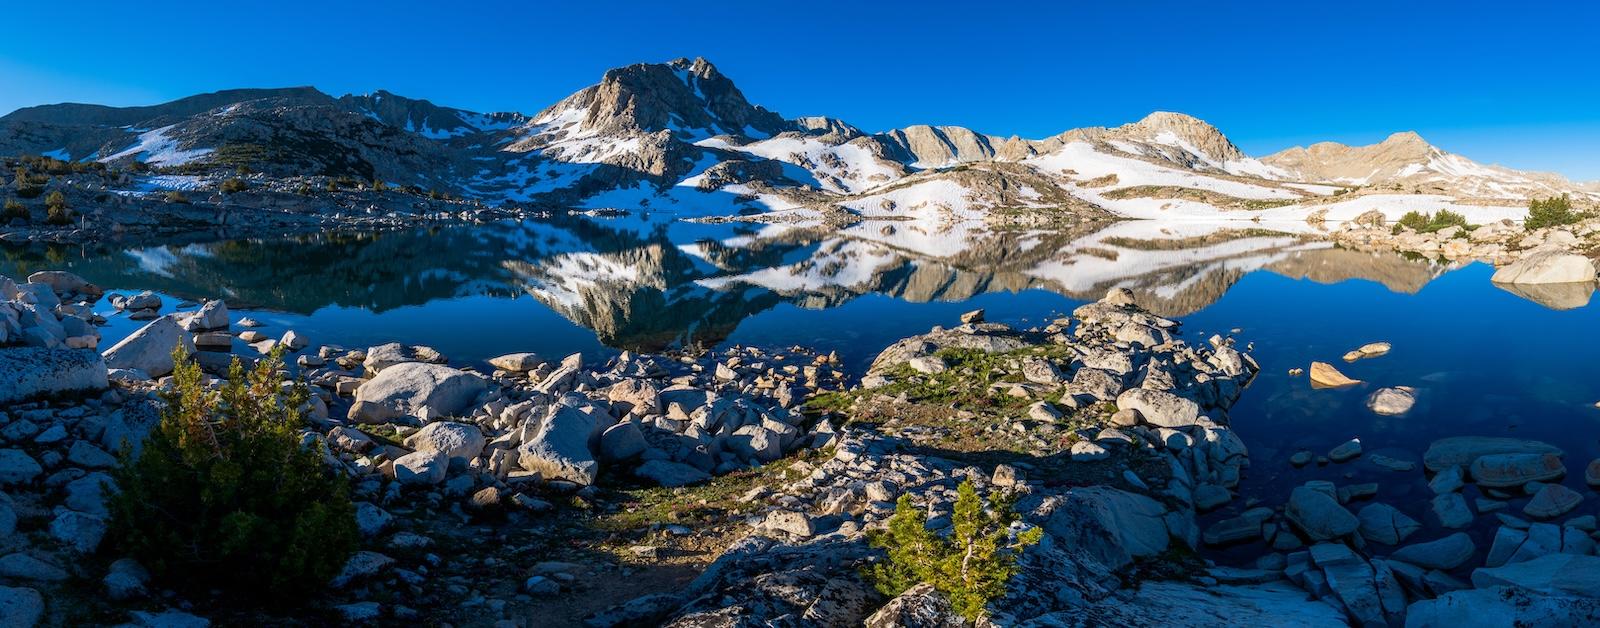 Morning reflection of Muriel Peak over Muriel Lake